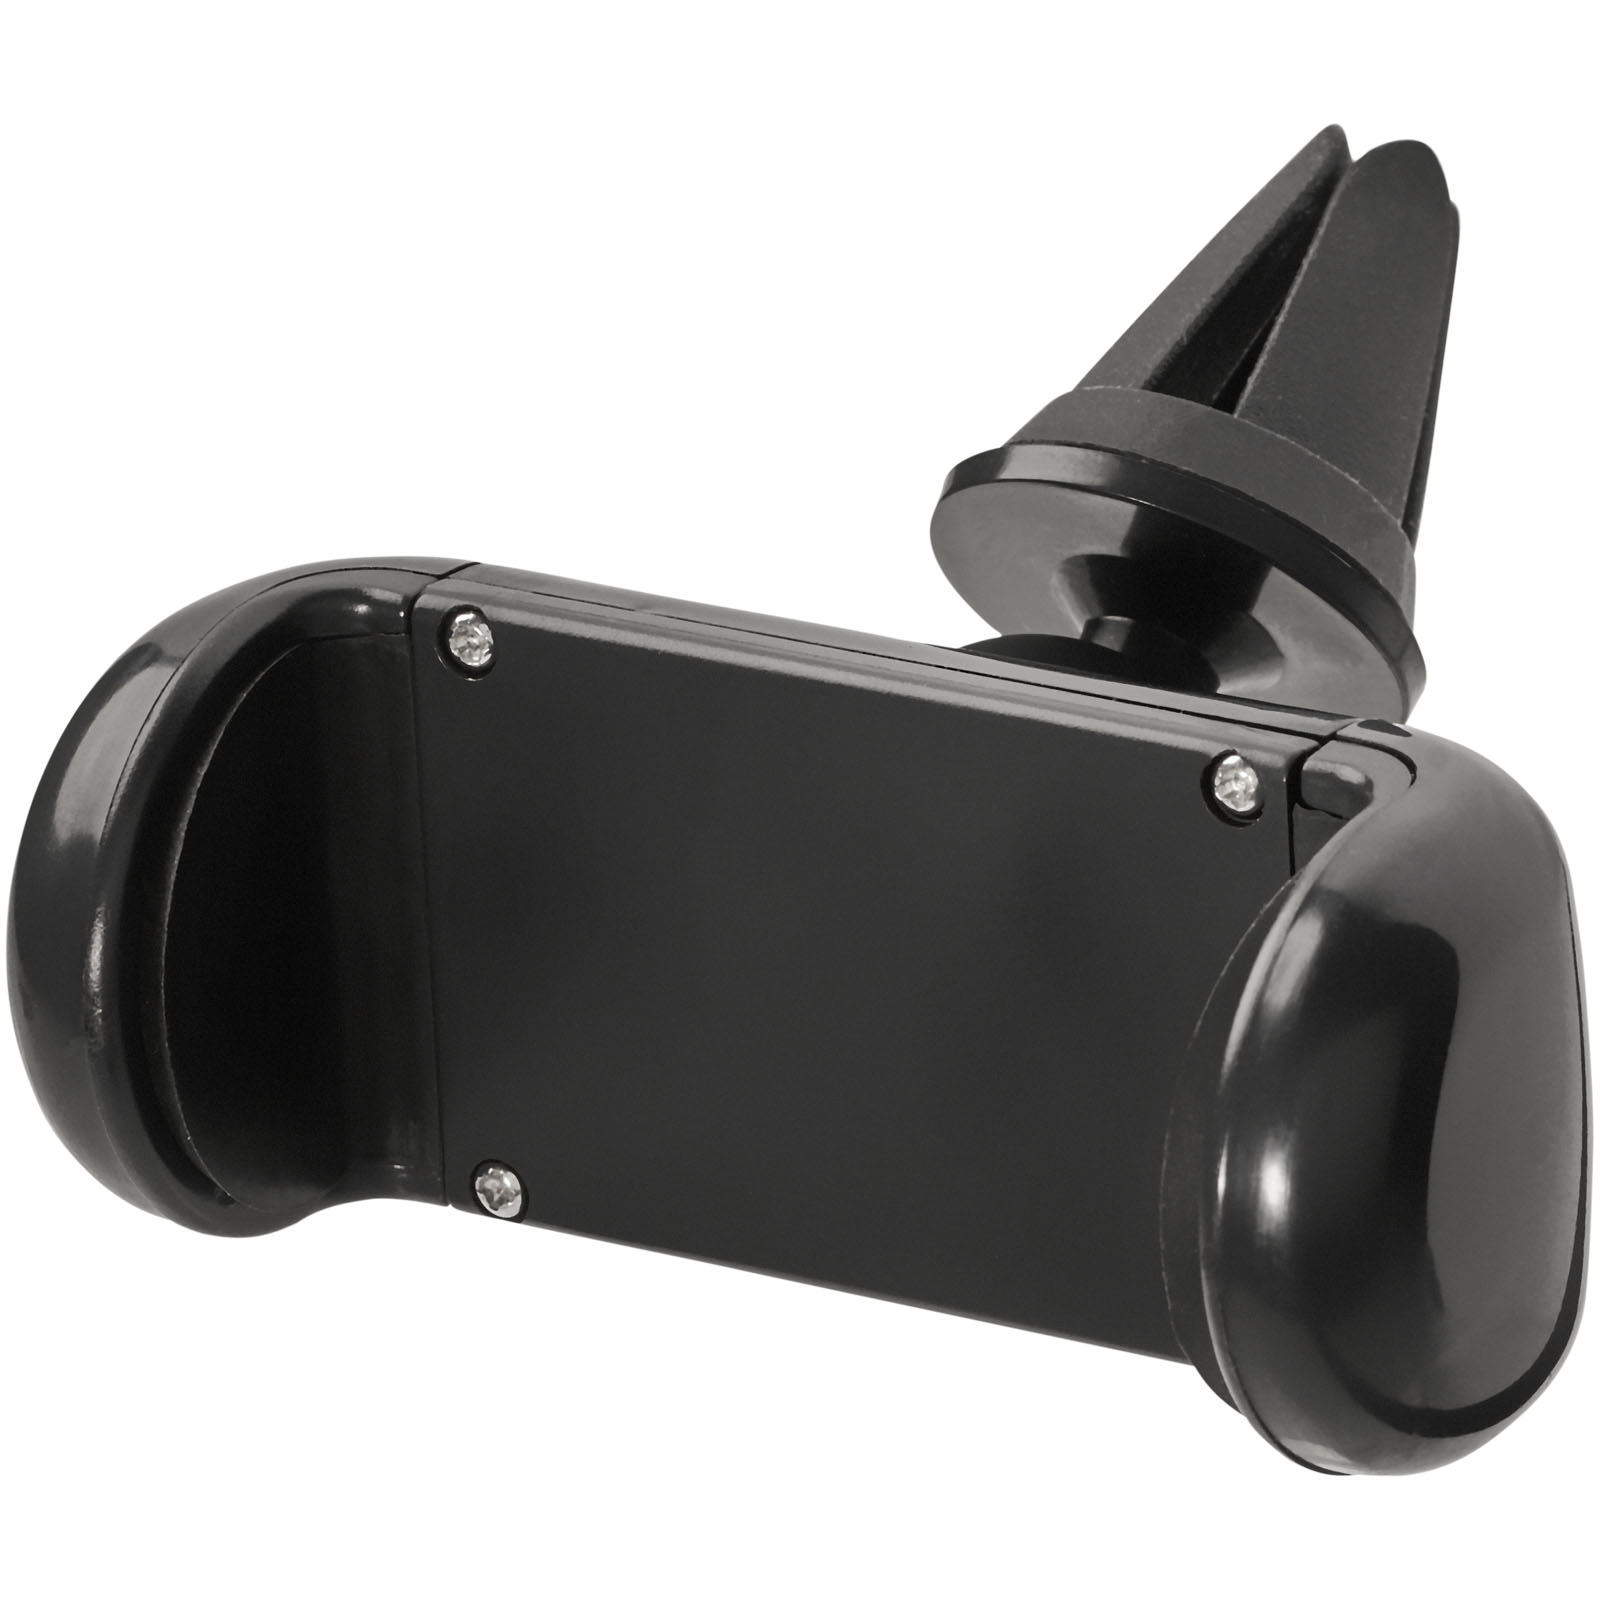 Plastic car phone holder AMBLER - solid black